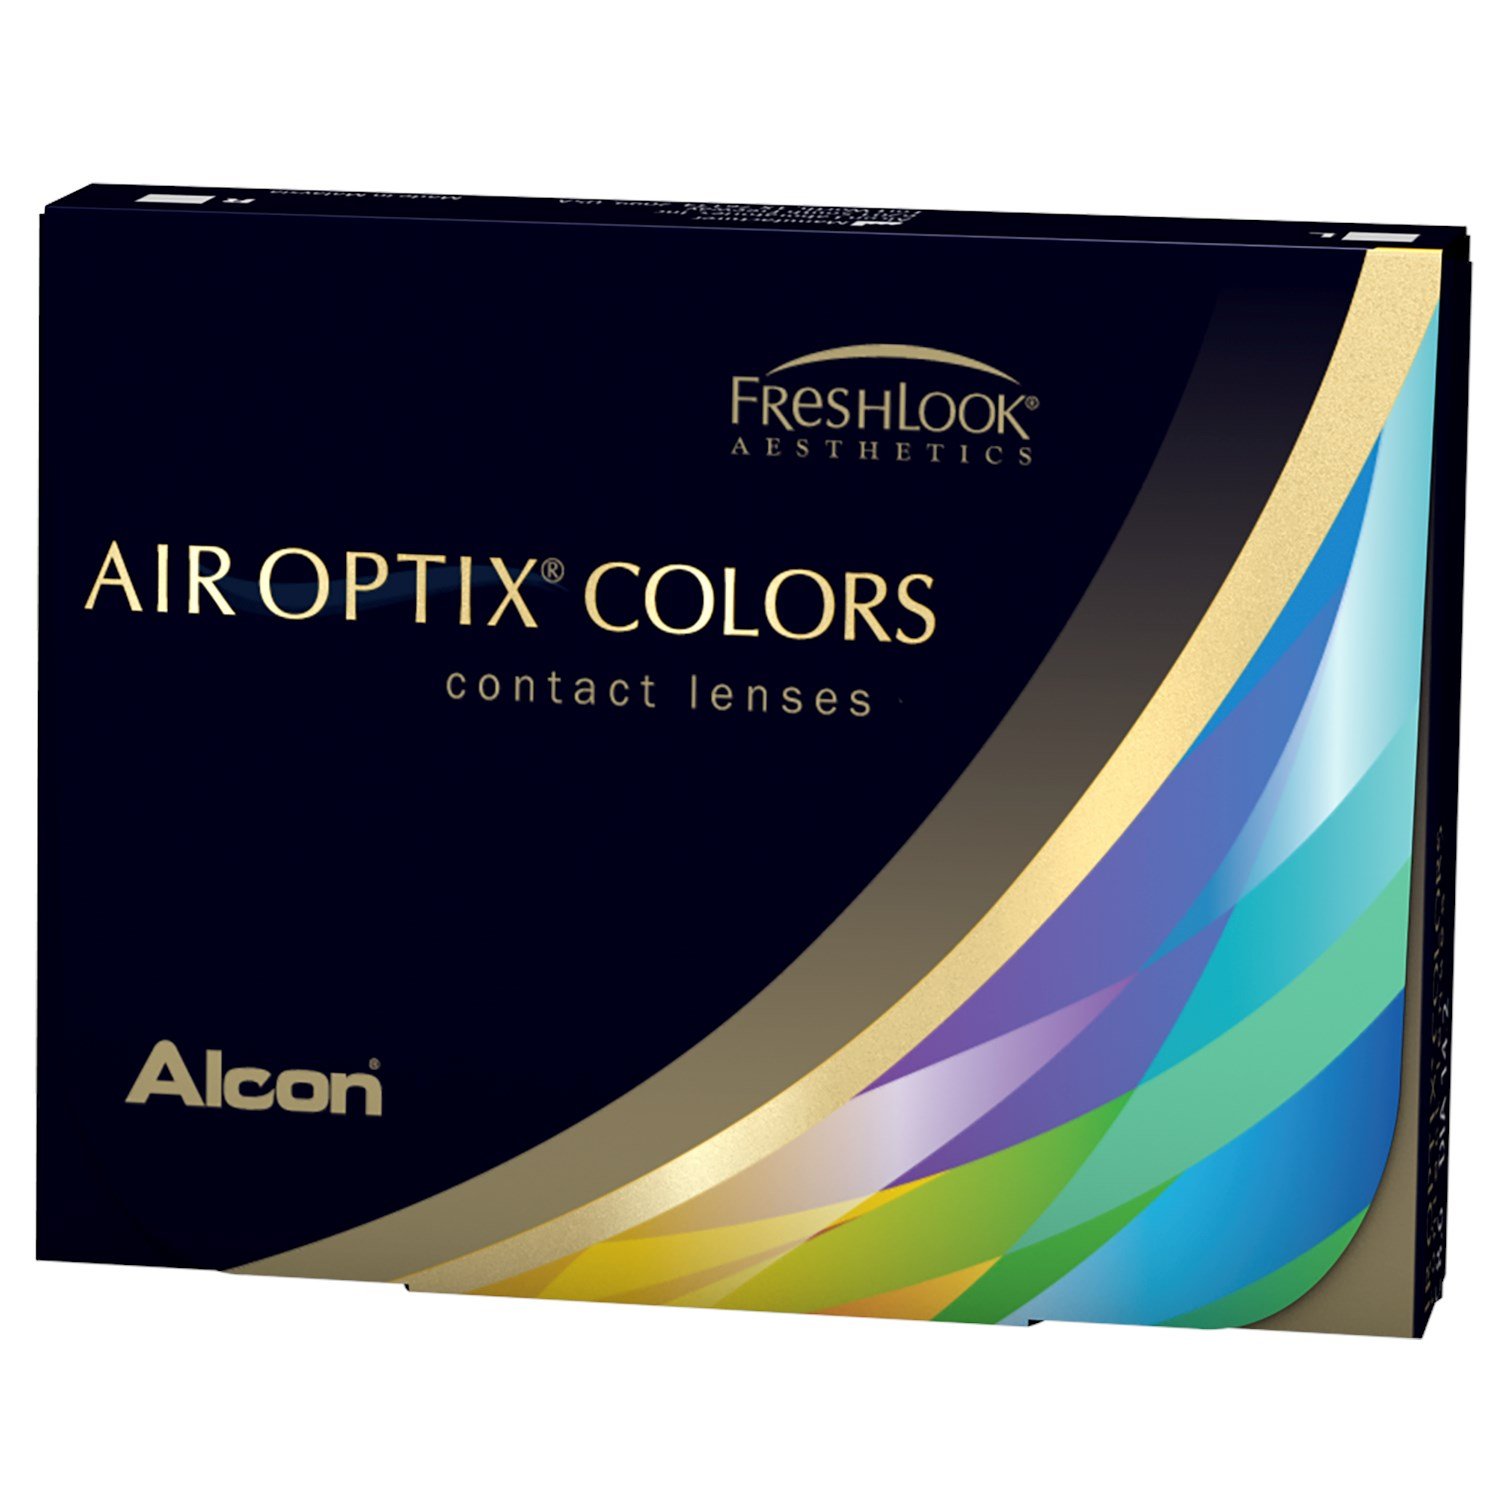 AIR OPTIX COLORS 2pk contact lenses